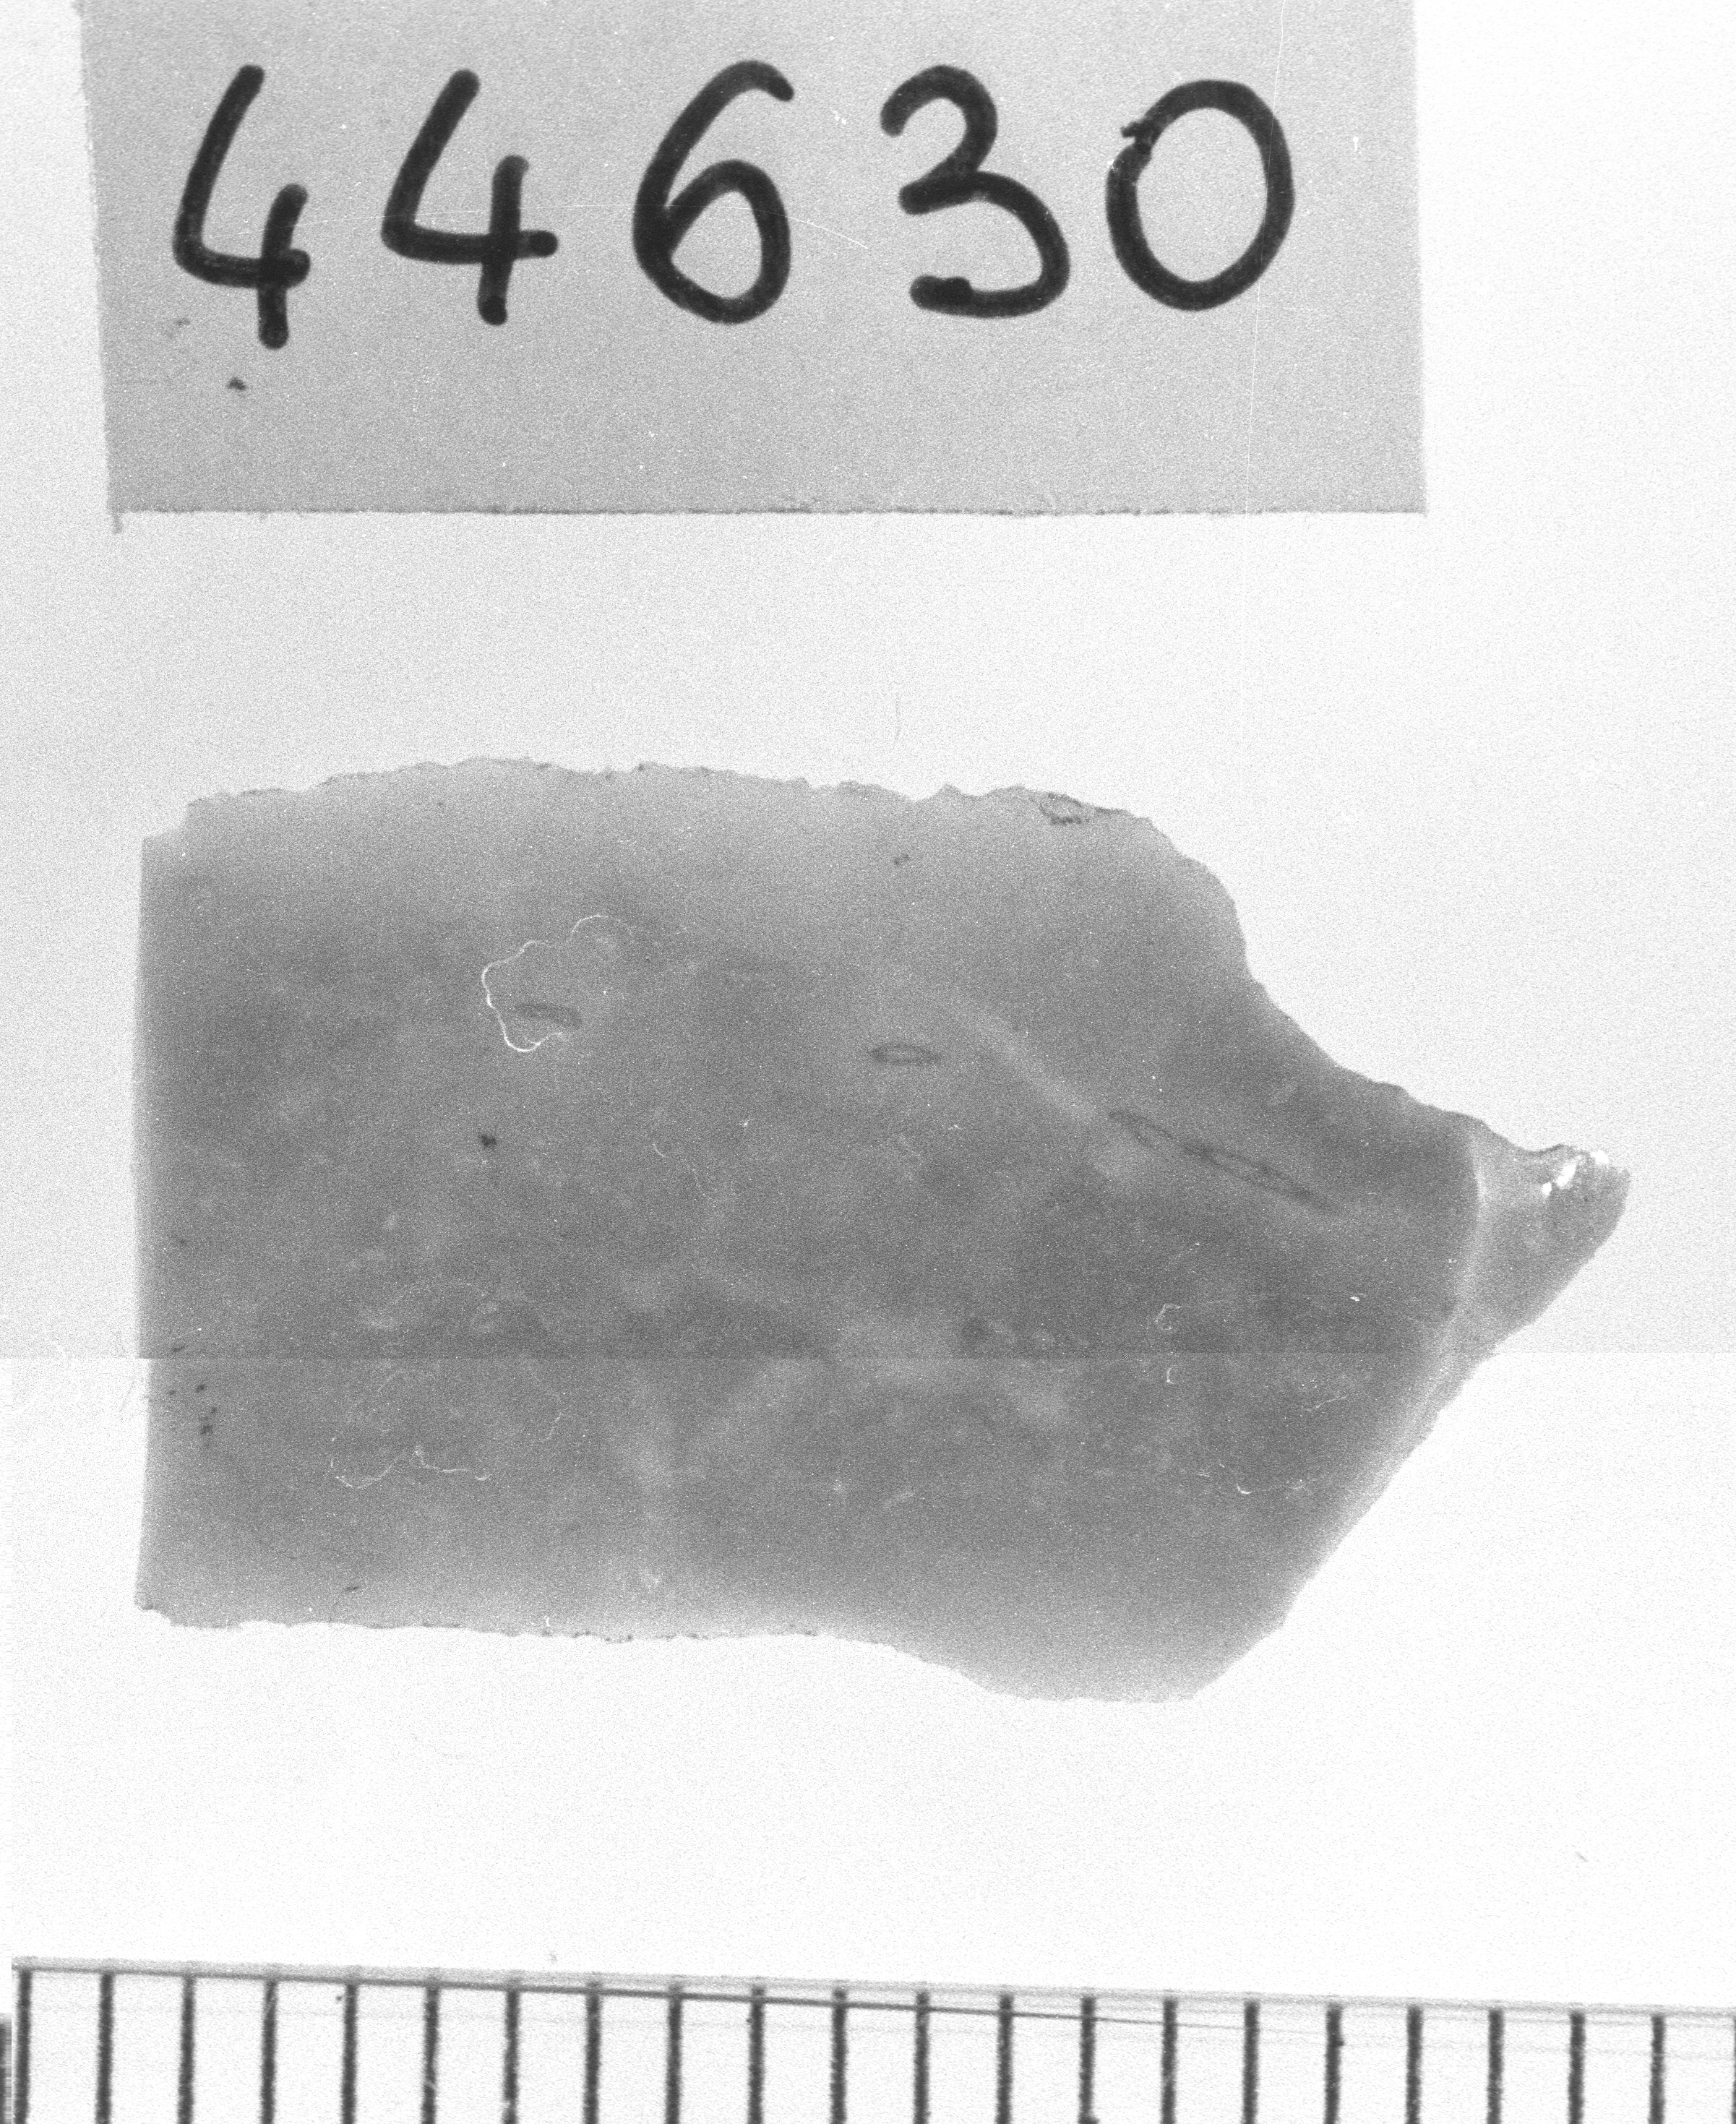 microbulino/ frammento (Neolitico)